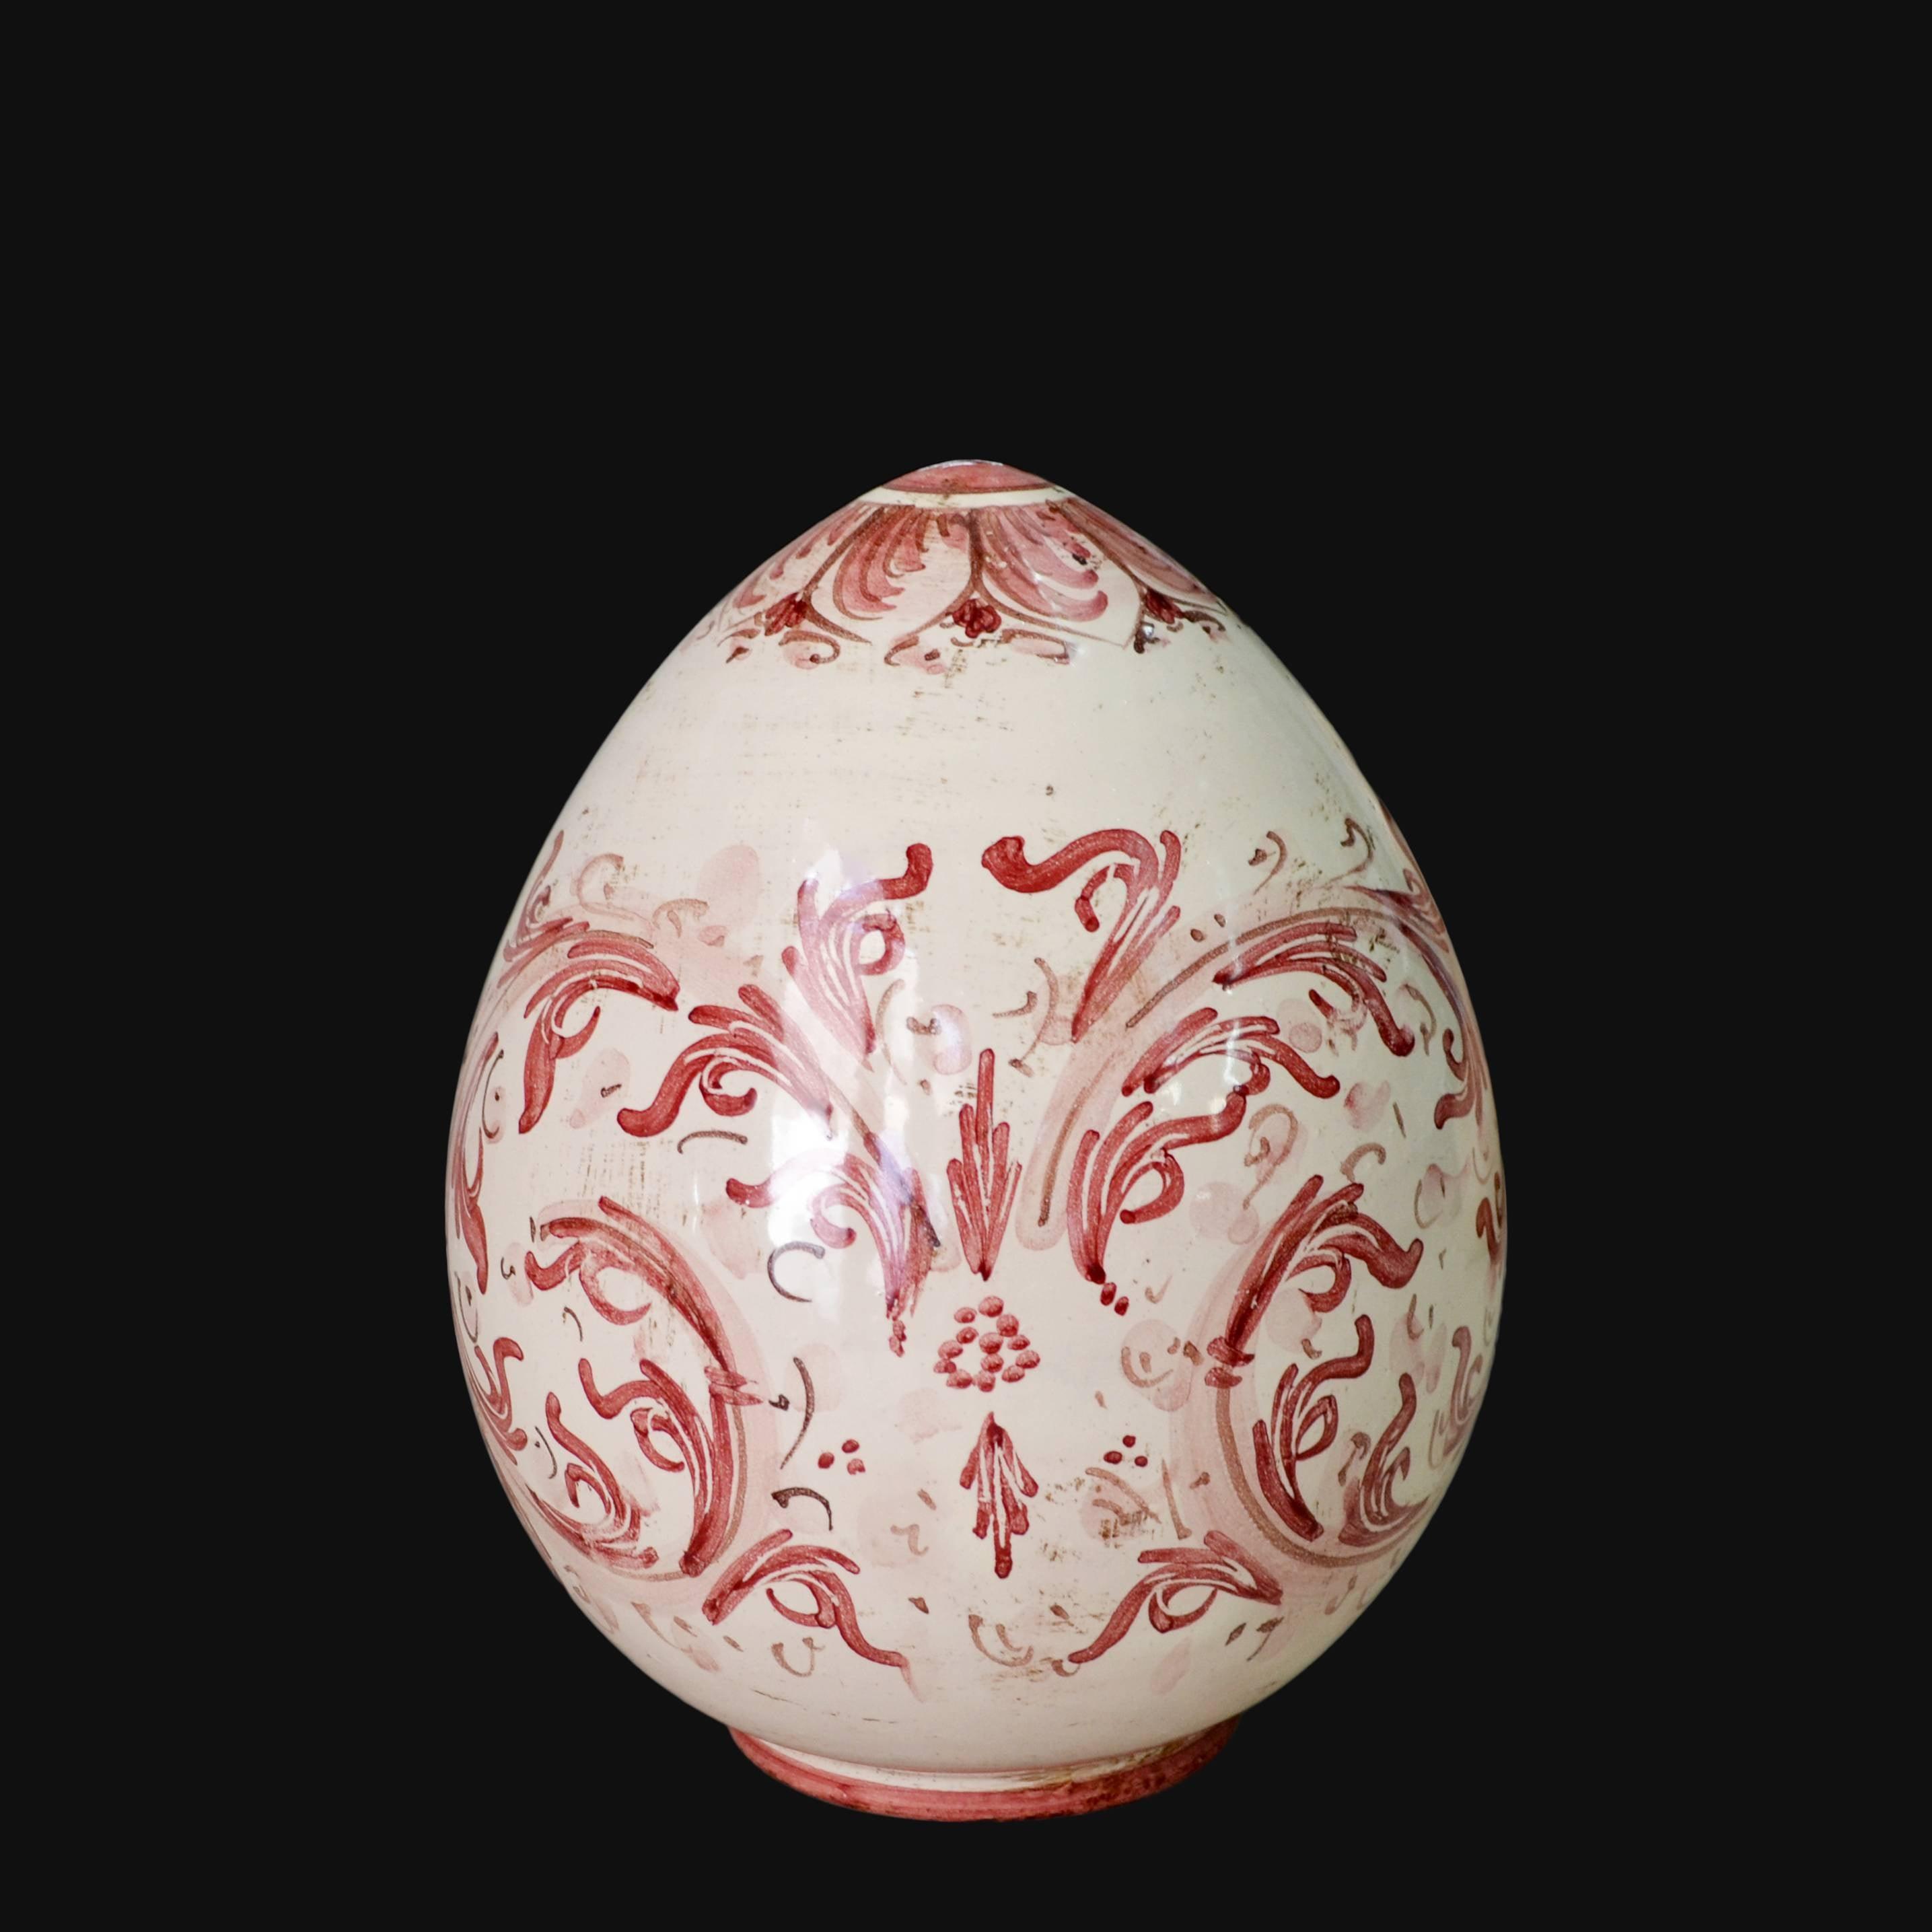 Uovo in ceramica h 15/20 cm Serie d'arte mono bordeaux - Ceramiche di Caltagirone - Ceramiche di Caltagirone Sofia